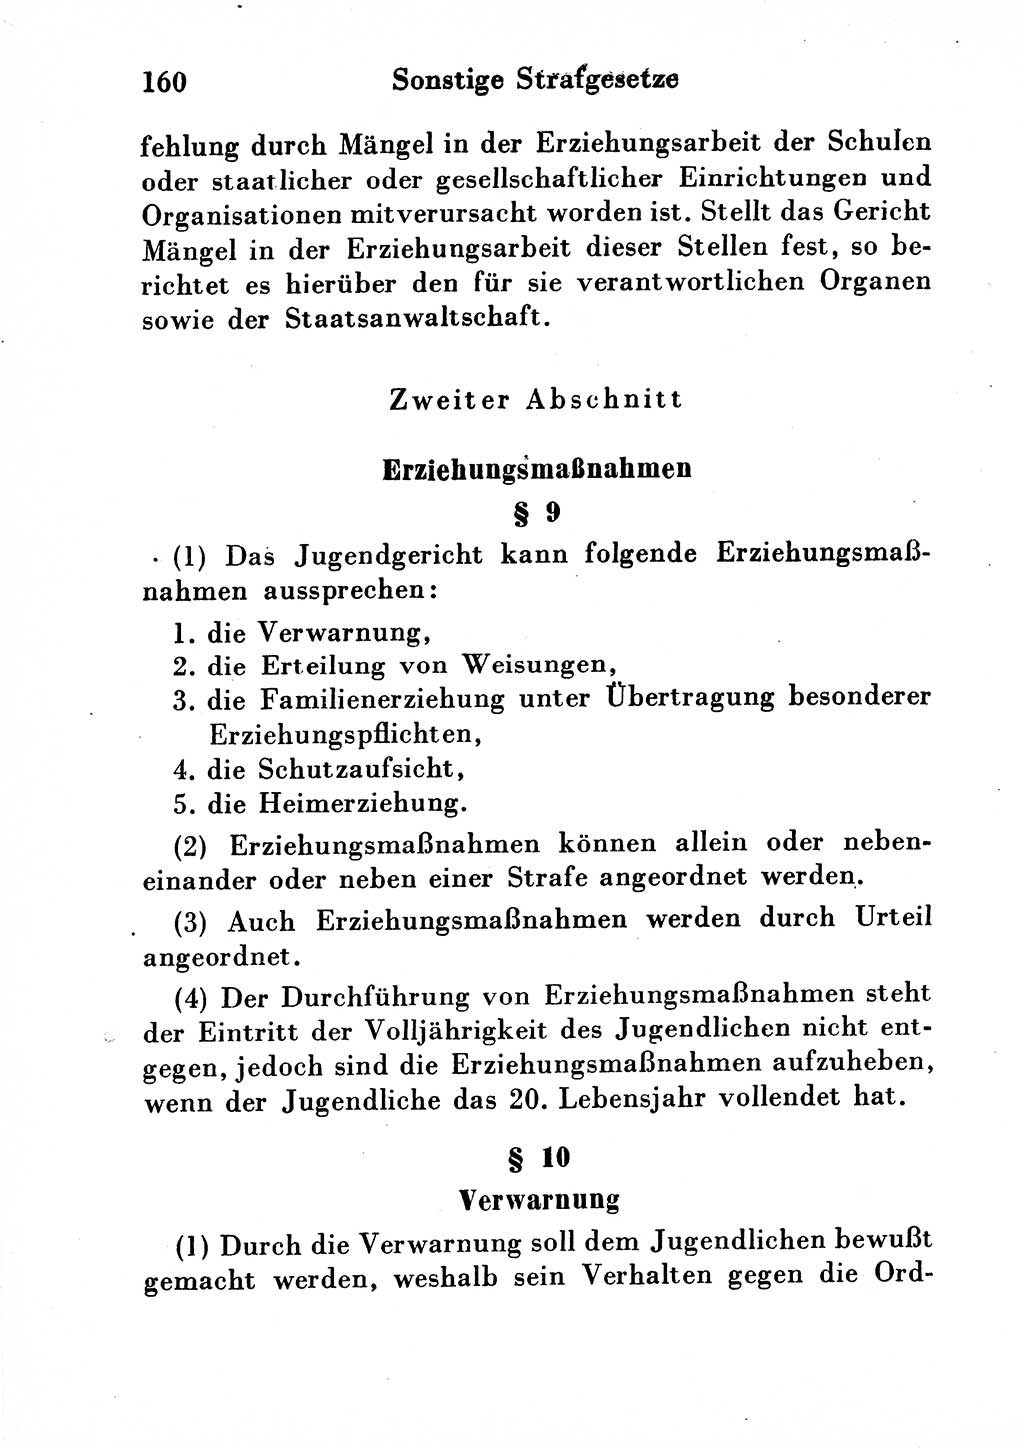 Strafgesetzbuch (StGB) und andere Strafgesetze [Deutsche Demokratische Republik (DDR)] 1954, Seite 160 (StGB Strafges. DDR 1954, S. 160)